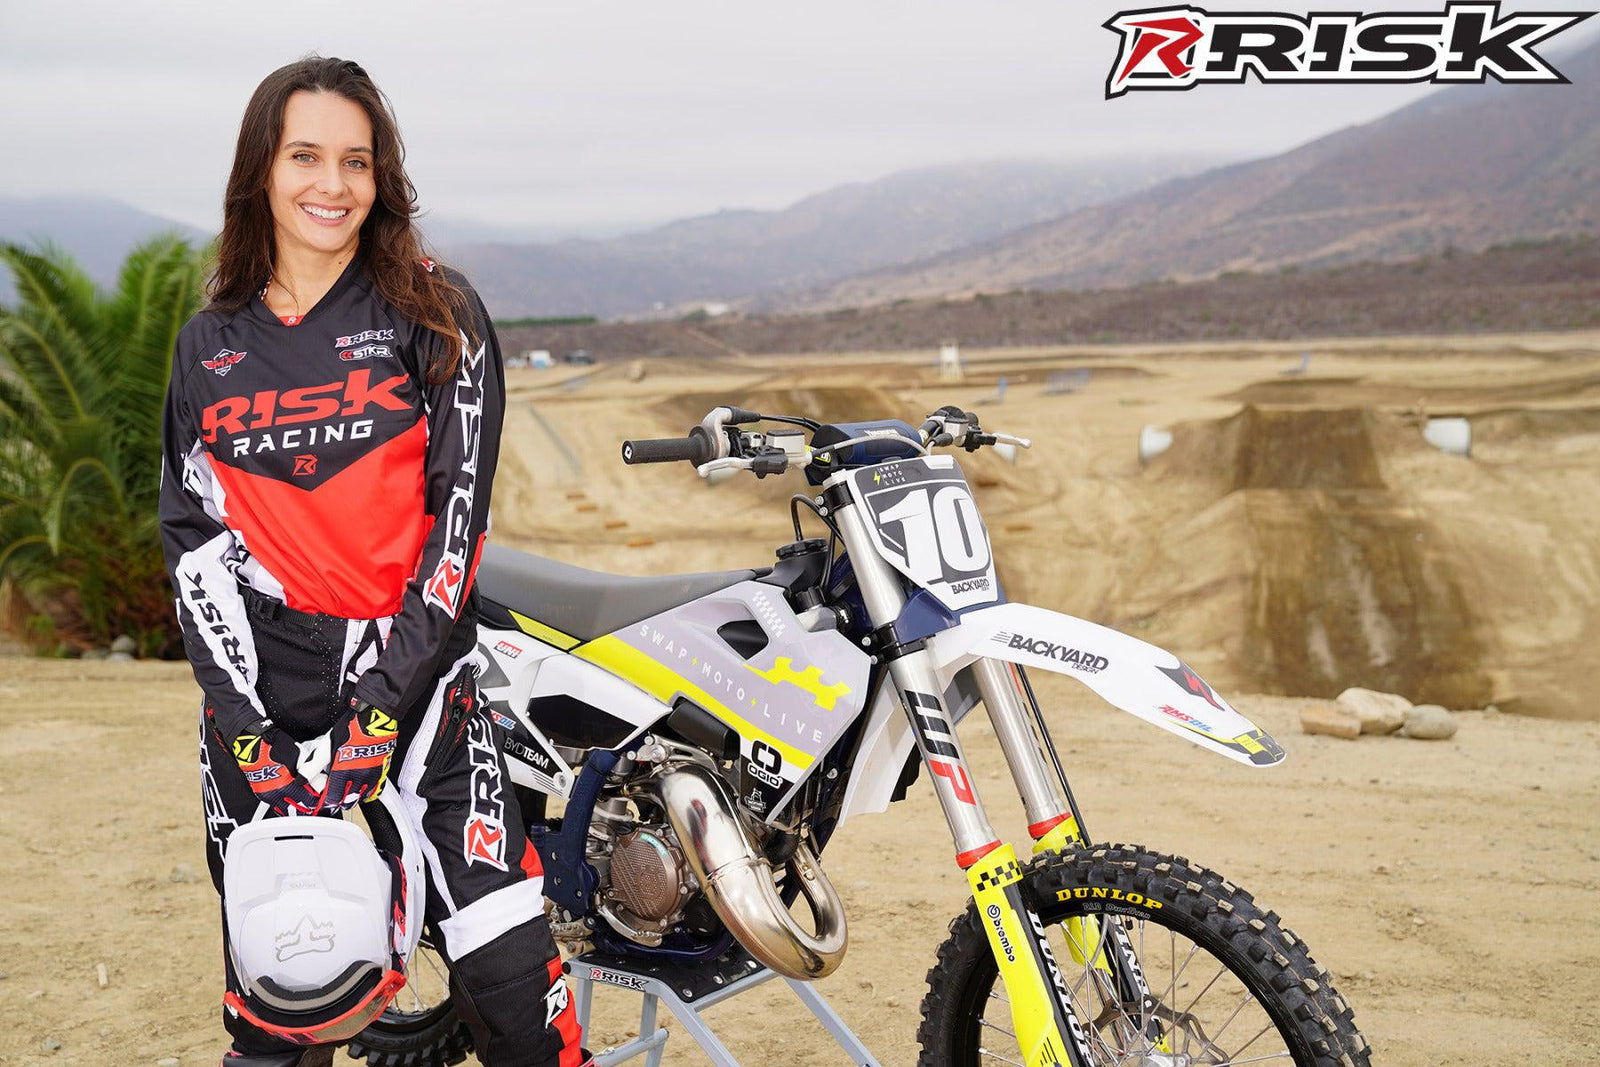 La modelo de moto de Risk Racing de octubre, Jessica Victorino, posa con varios bikinis y camisetas de Risk Racing junto a una moto de cross que está sentada en un soporte RR1-Ride-On de Risk Racing - Pose #33